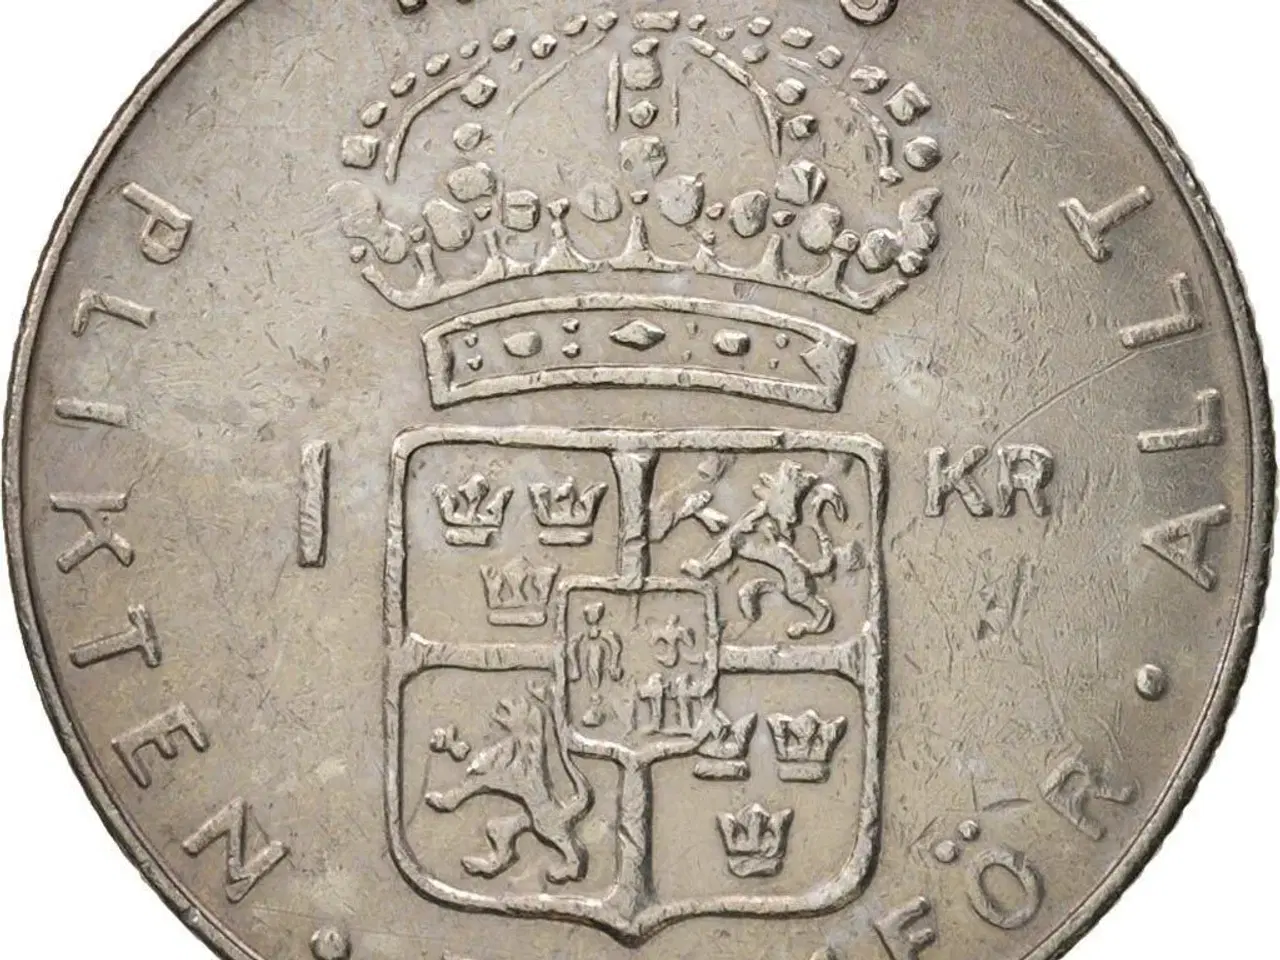 Billede 4 - Svenske 1 krona mønter fra 1952-1973